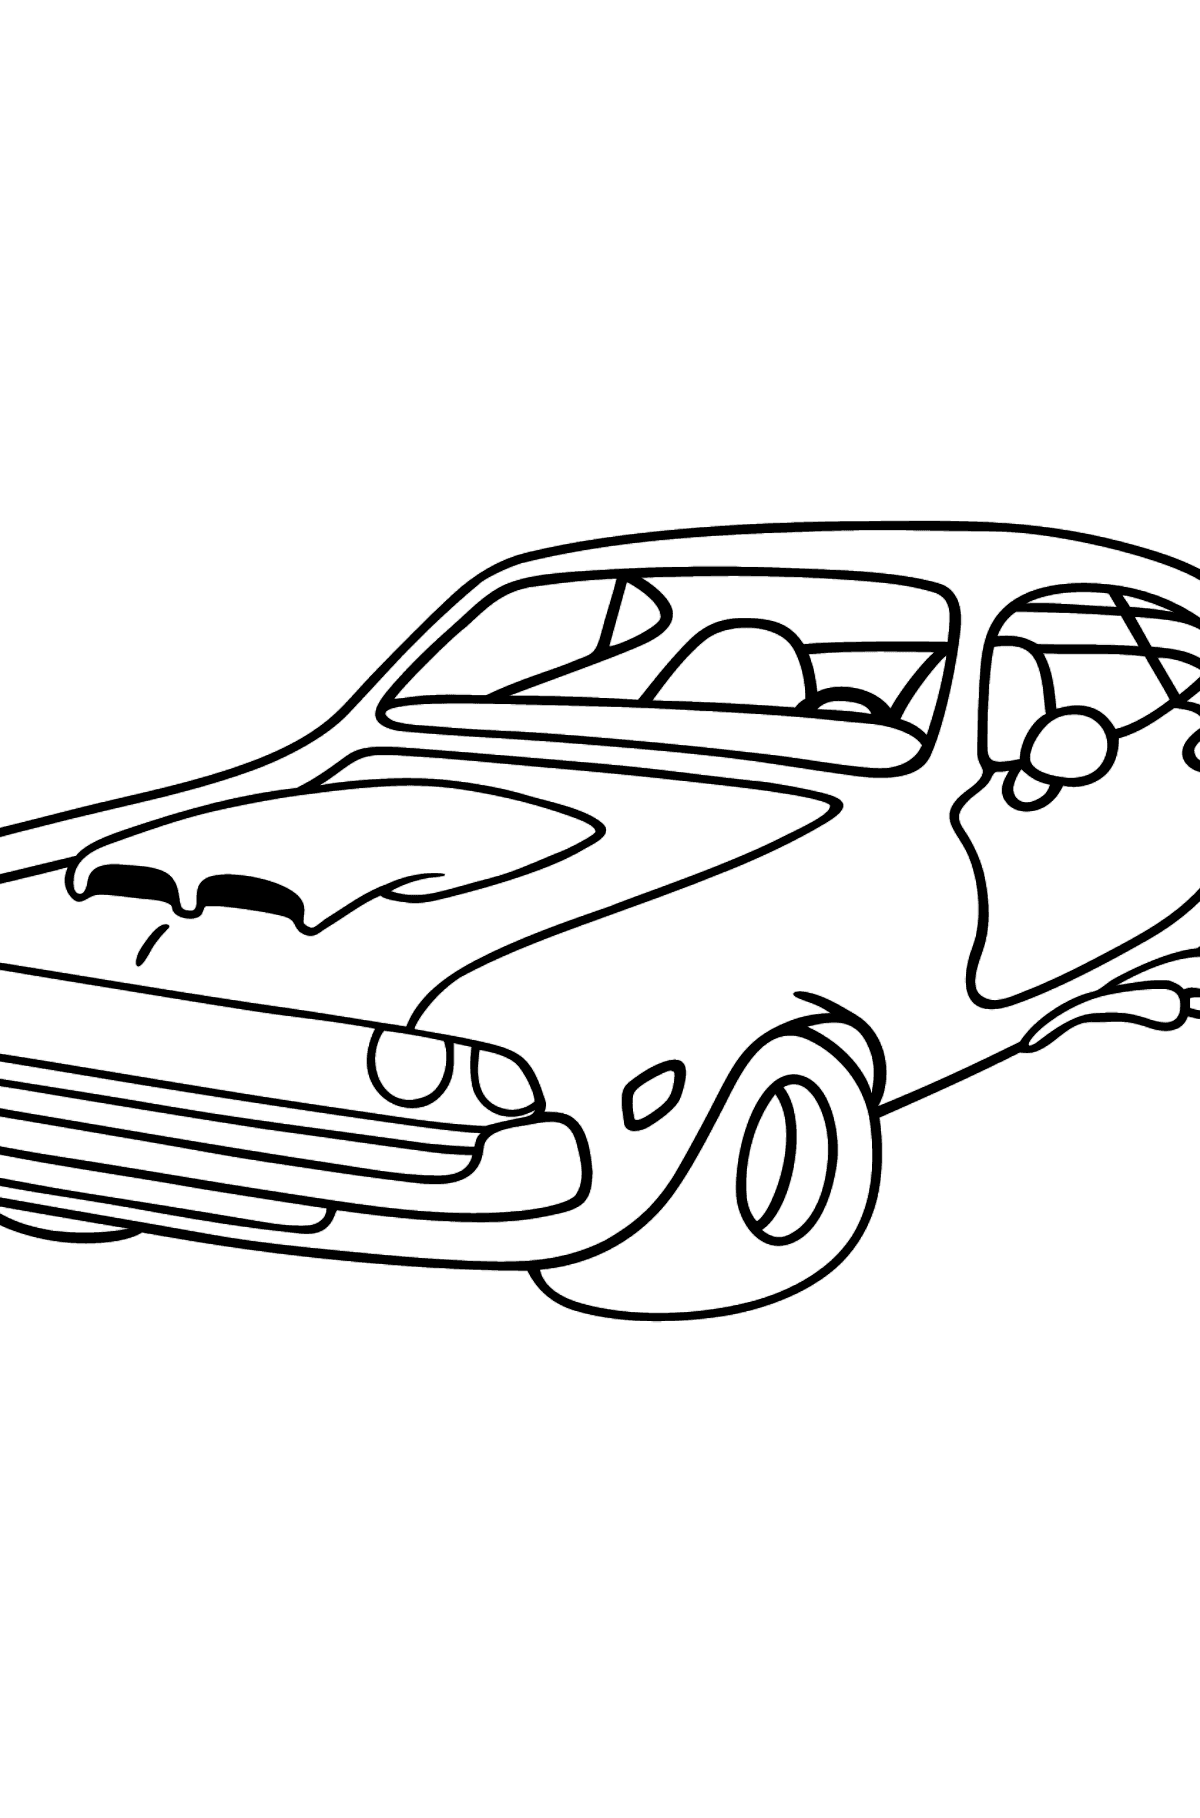 Tegning til fargelegging chevrolet bil - Tegninger til fargelegging for barn